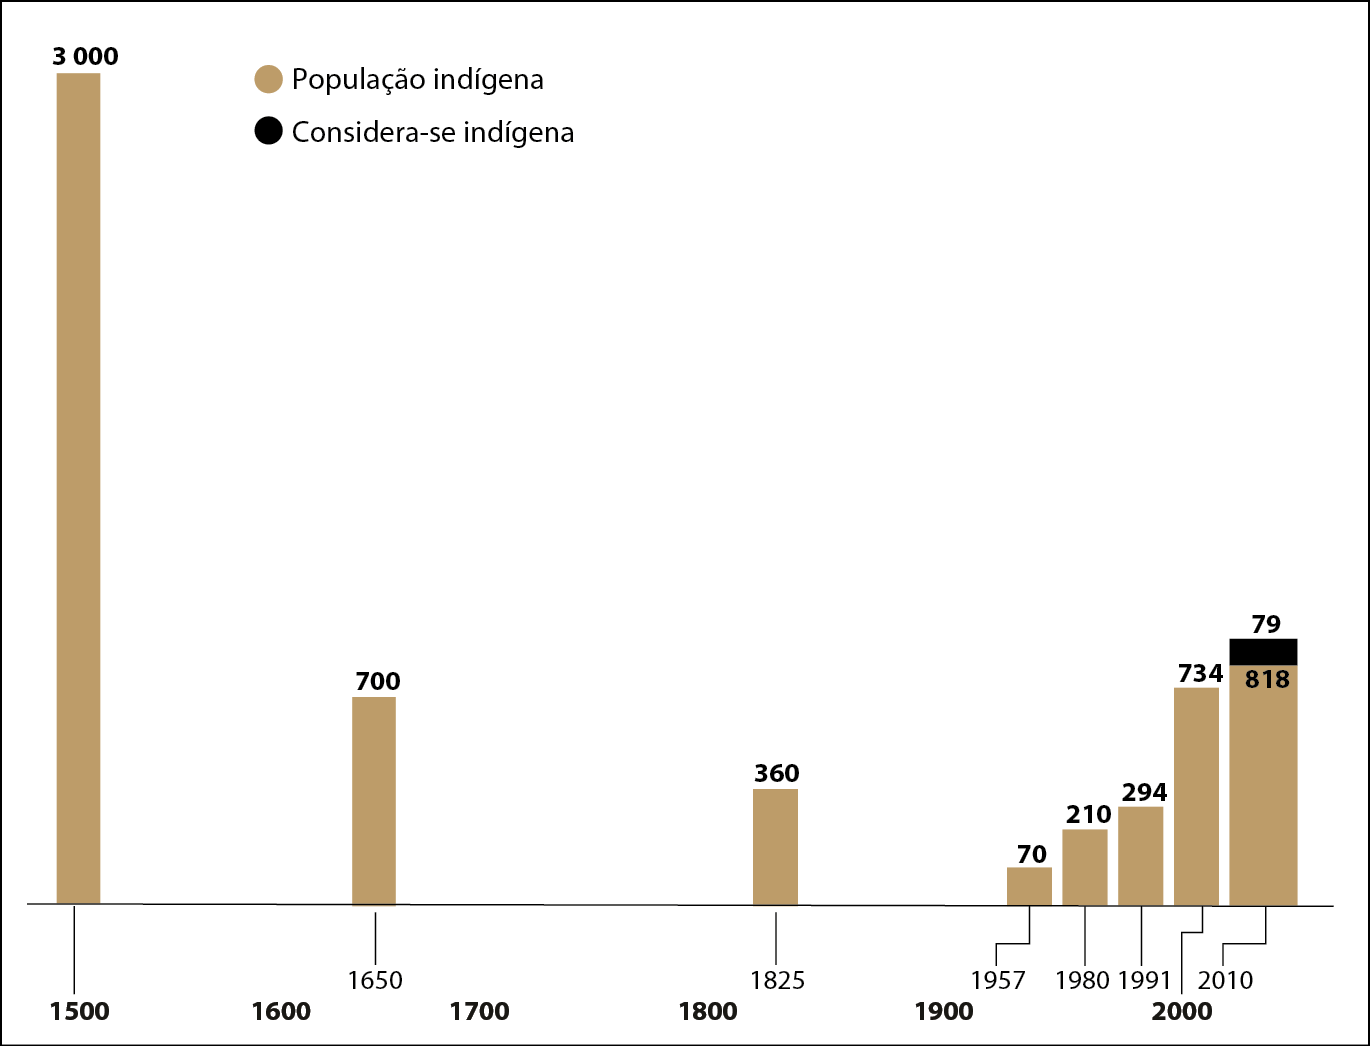 Gráfico de barras. População indígena no Brasil entre 1500 e 2010 (em milhares). Legenda: Em marrom: População indígena. Em preto: Considera-se indígena. No eixo vertical o número da população indígena. No eixo horizontal, os séculos de 1500 a 2000, e as datas específicas dos dados. Ano de 1500: População indígena: 3 milhões Ano de 1650:  População indígena: 700 mil. Ano de 1825:  População indígena: 360 mil. Ano de 1957:  População indígena: 70 mil Ano de 1980: População indígena: 210 mil Ano de 1991: População indígena: 294 mil Ano 2000:  População indígena: 734 mil Ano de 2010: População indígena: 818 mil  e  População que considera-se indígena: 79 mil.